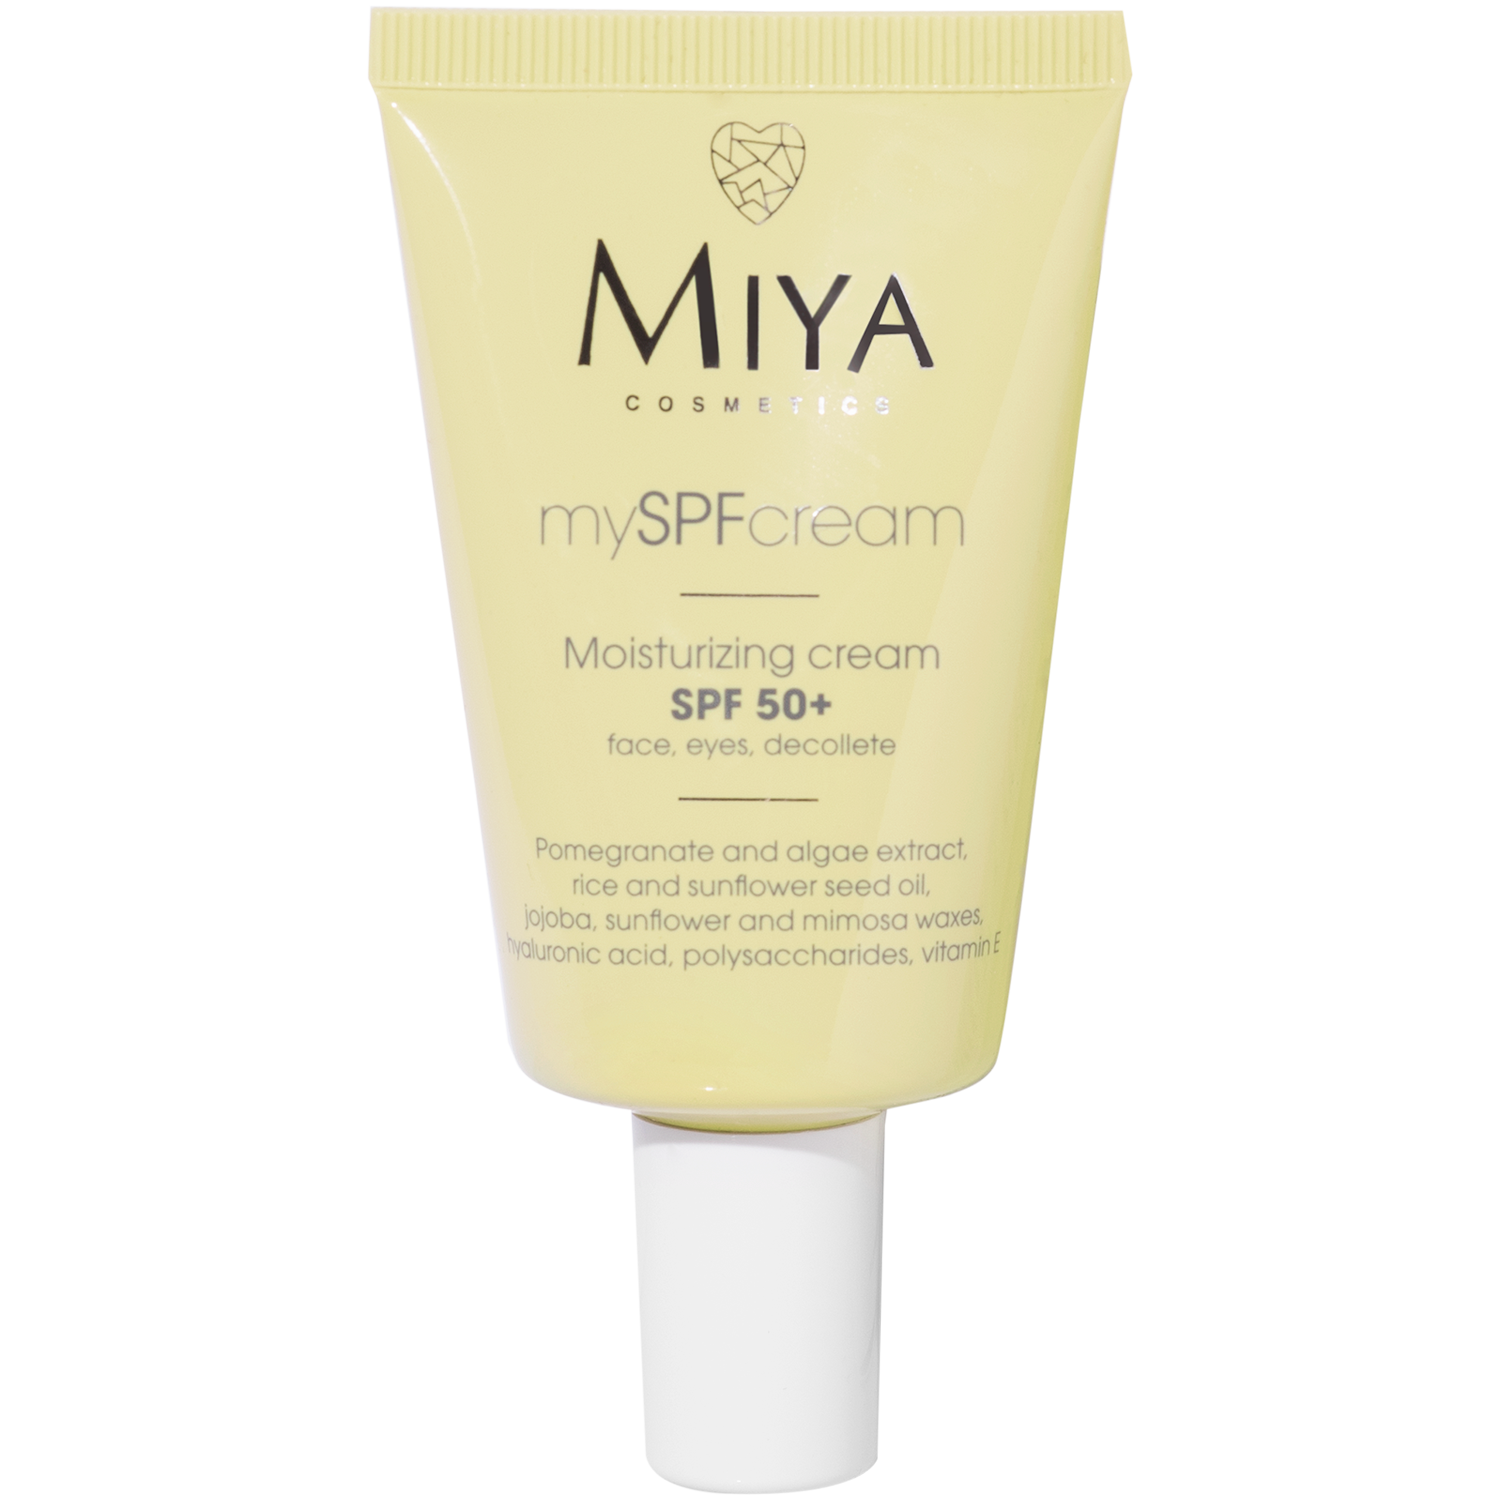 Miya Cosmetics mySPFcream увлажняющий крем для лица SPF50+, 40 мл